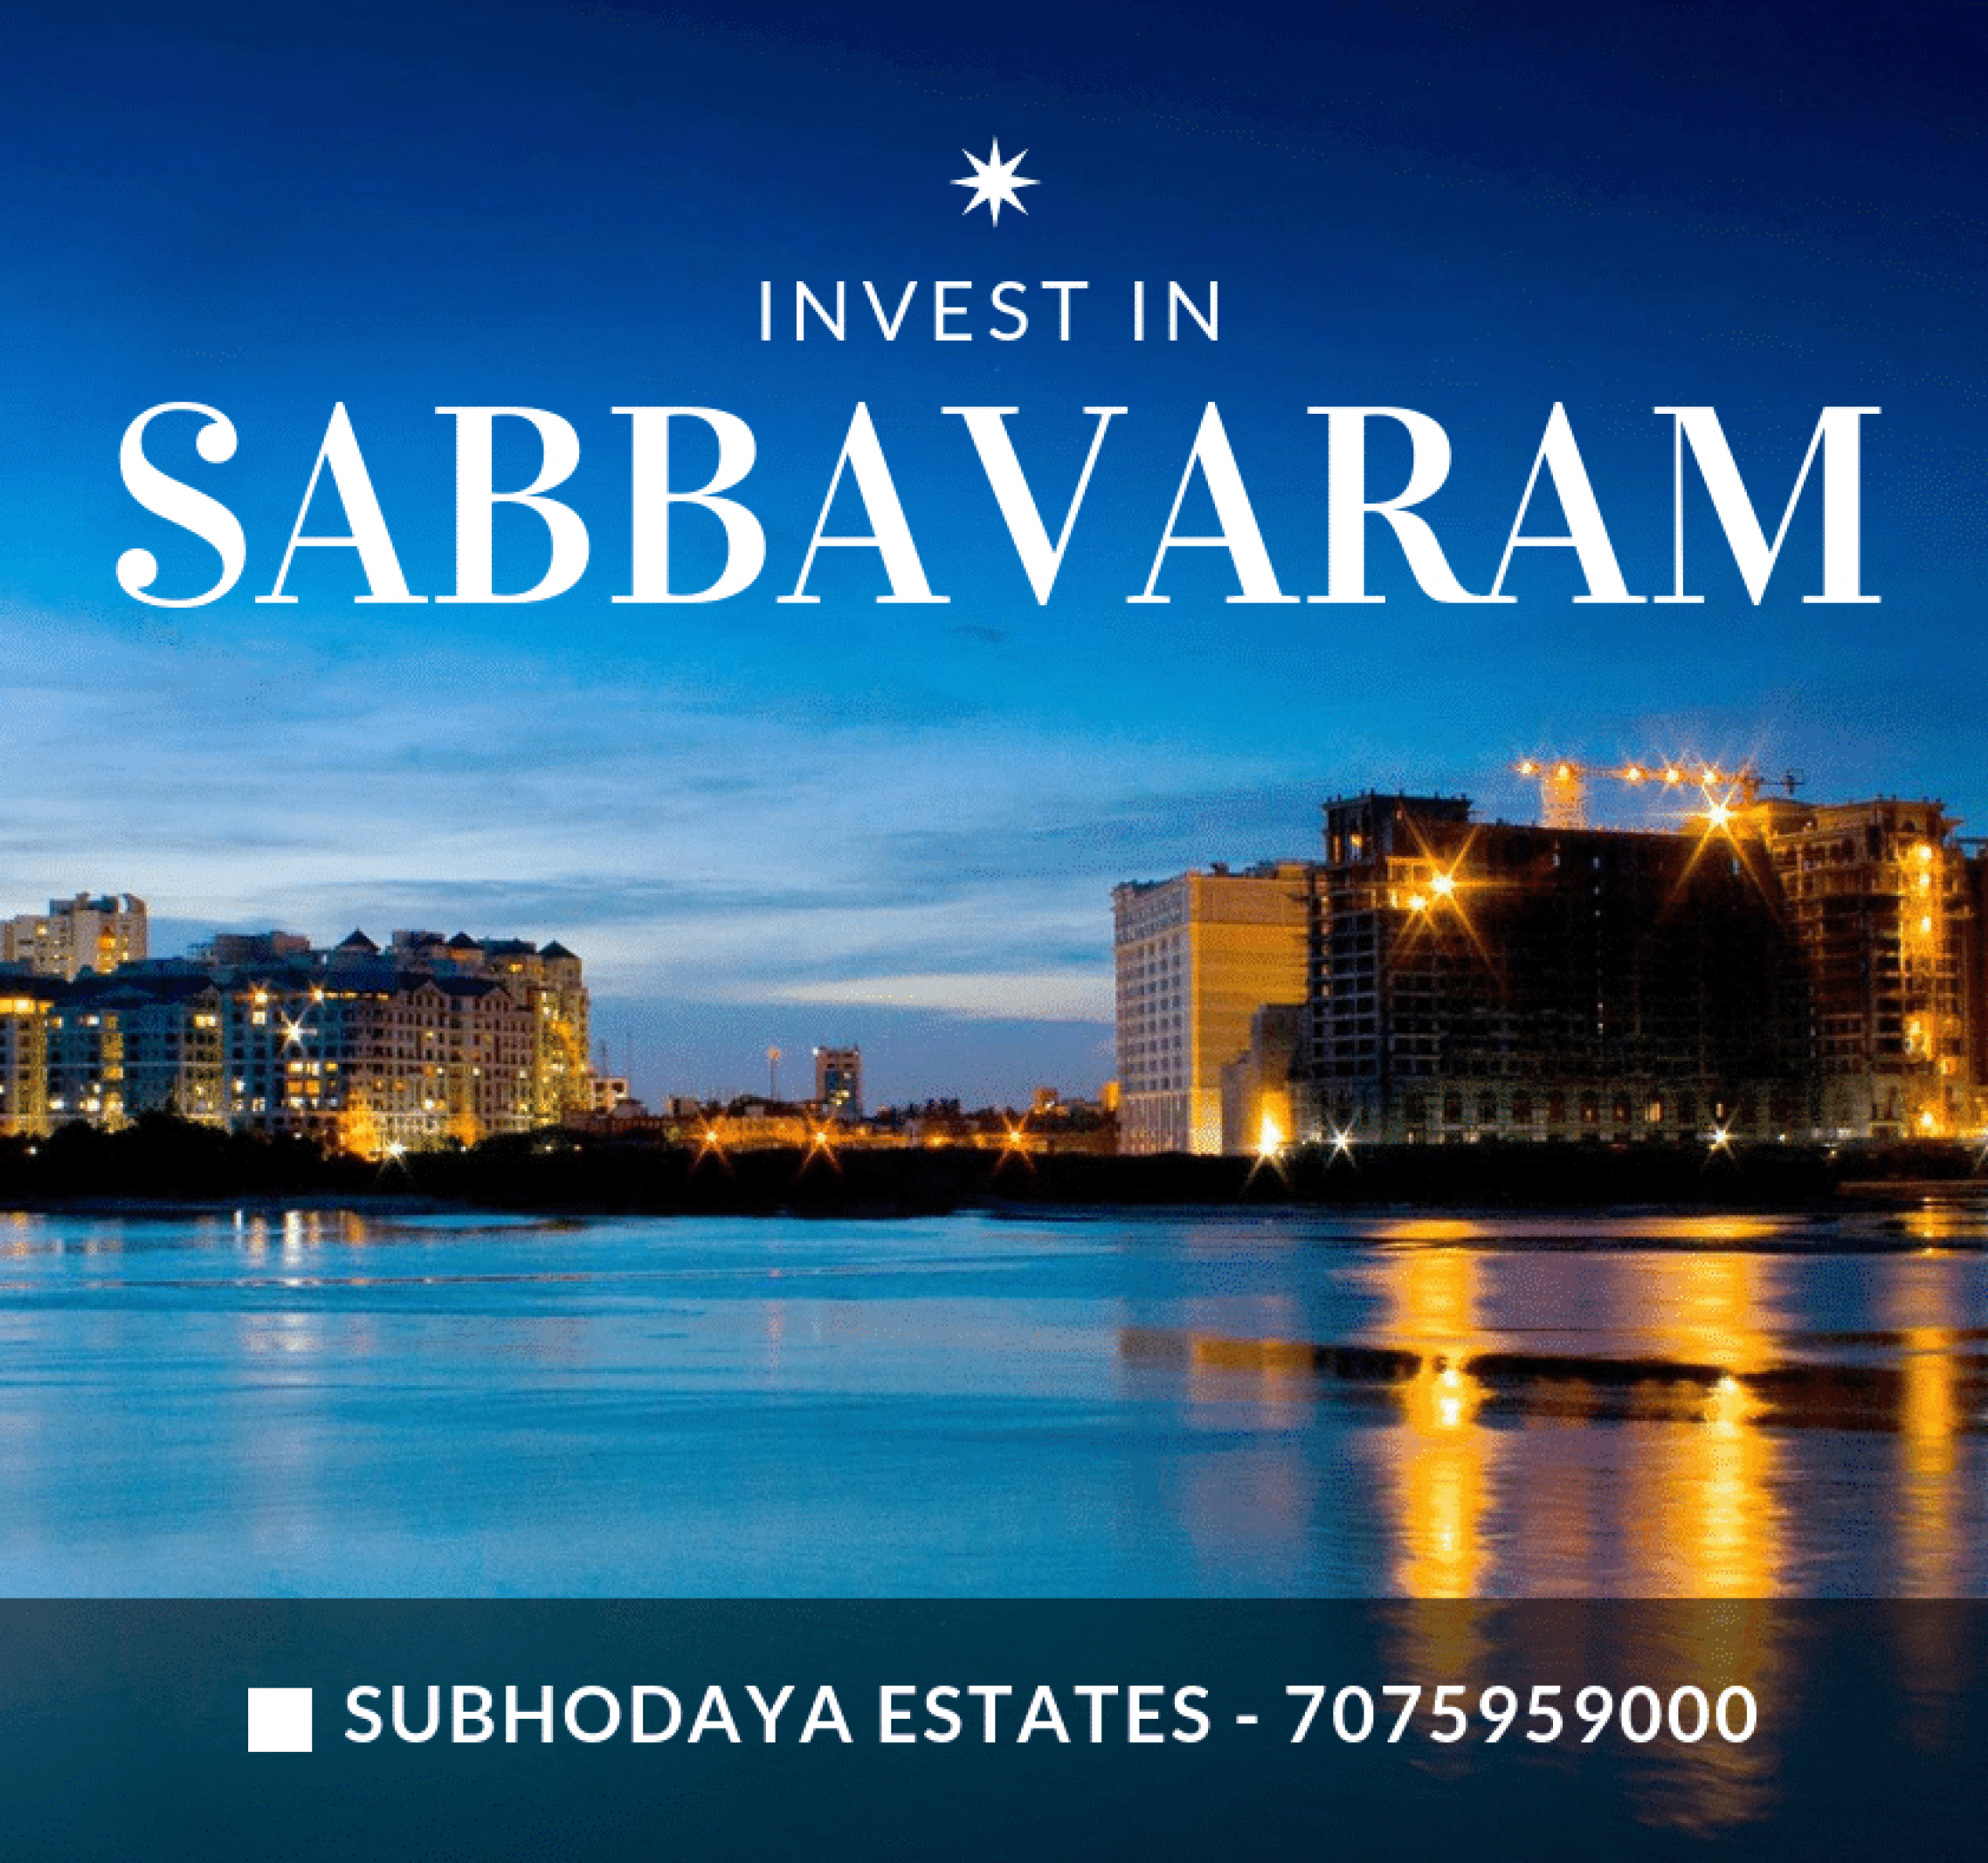 invest in sabbavaram